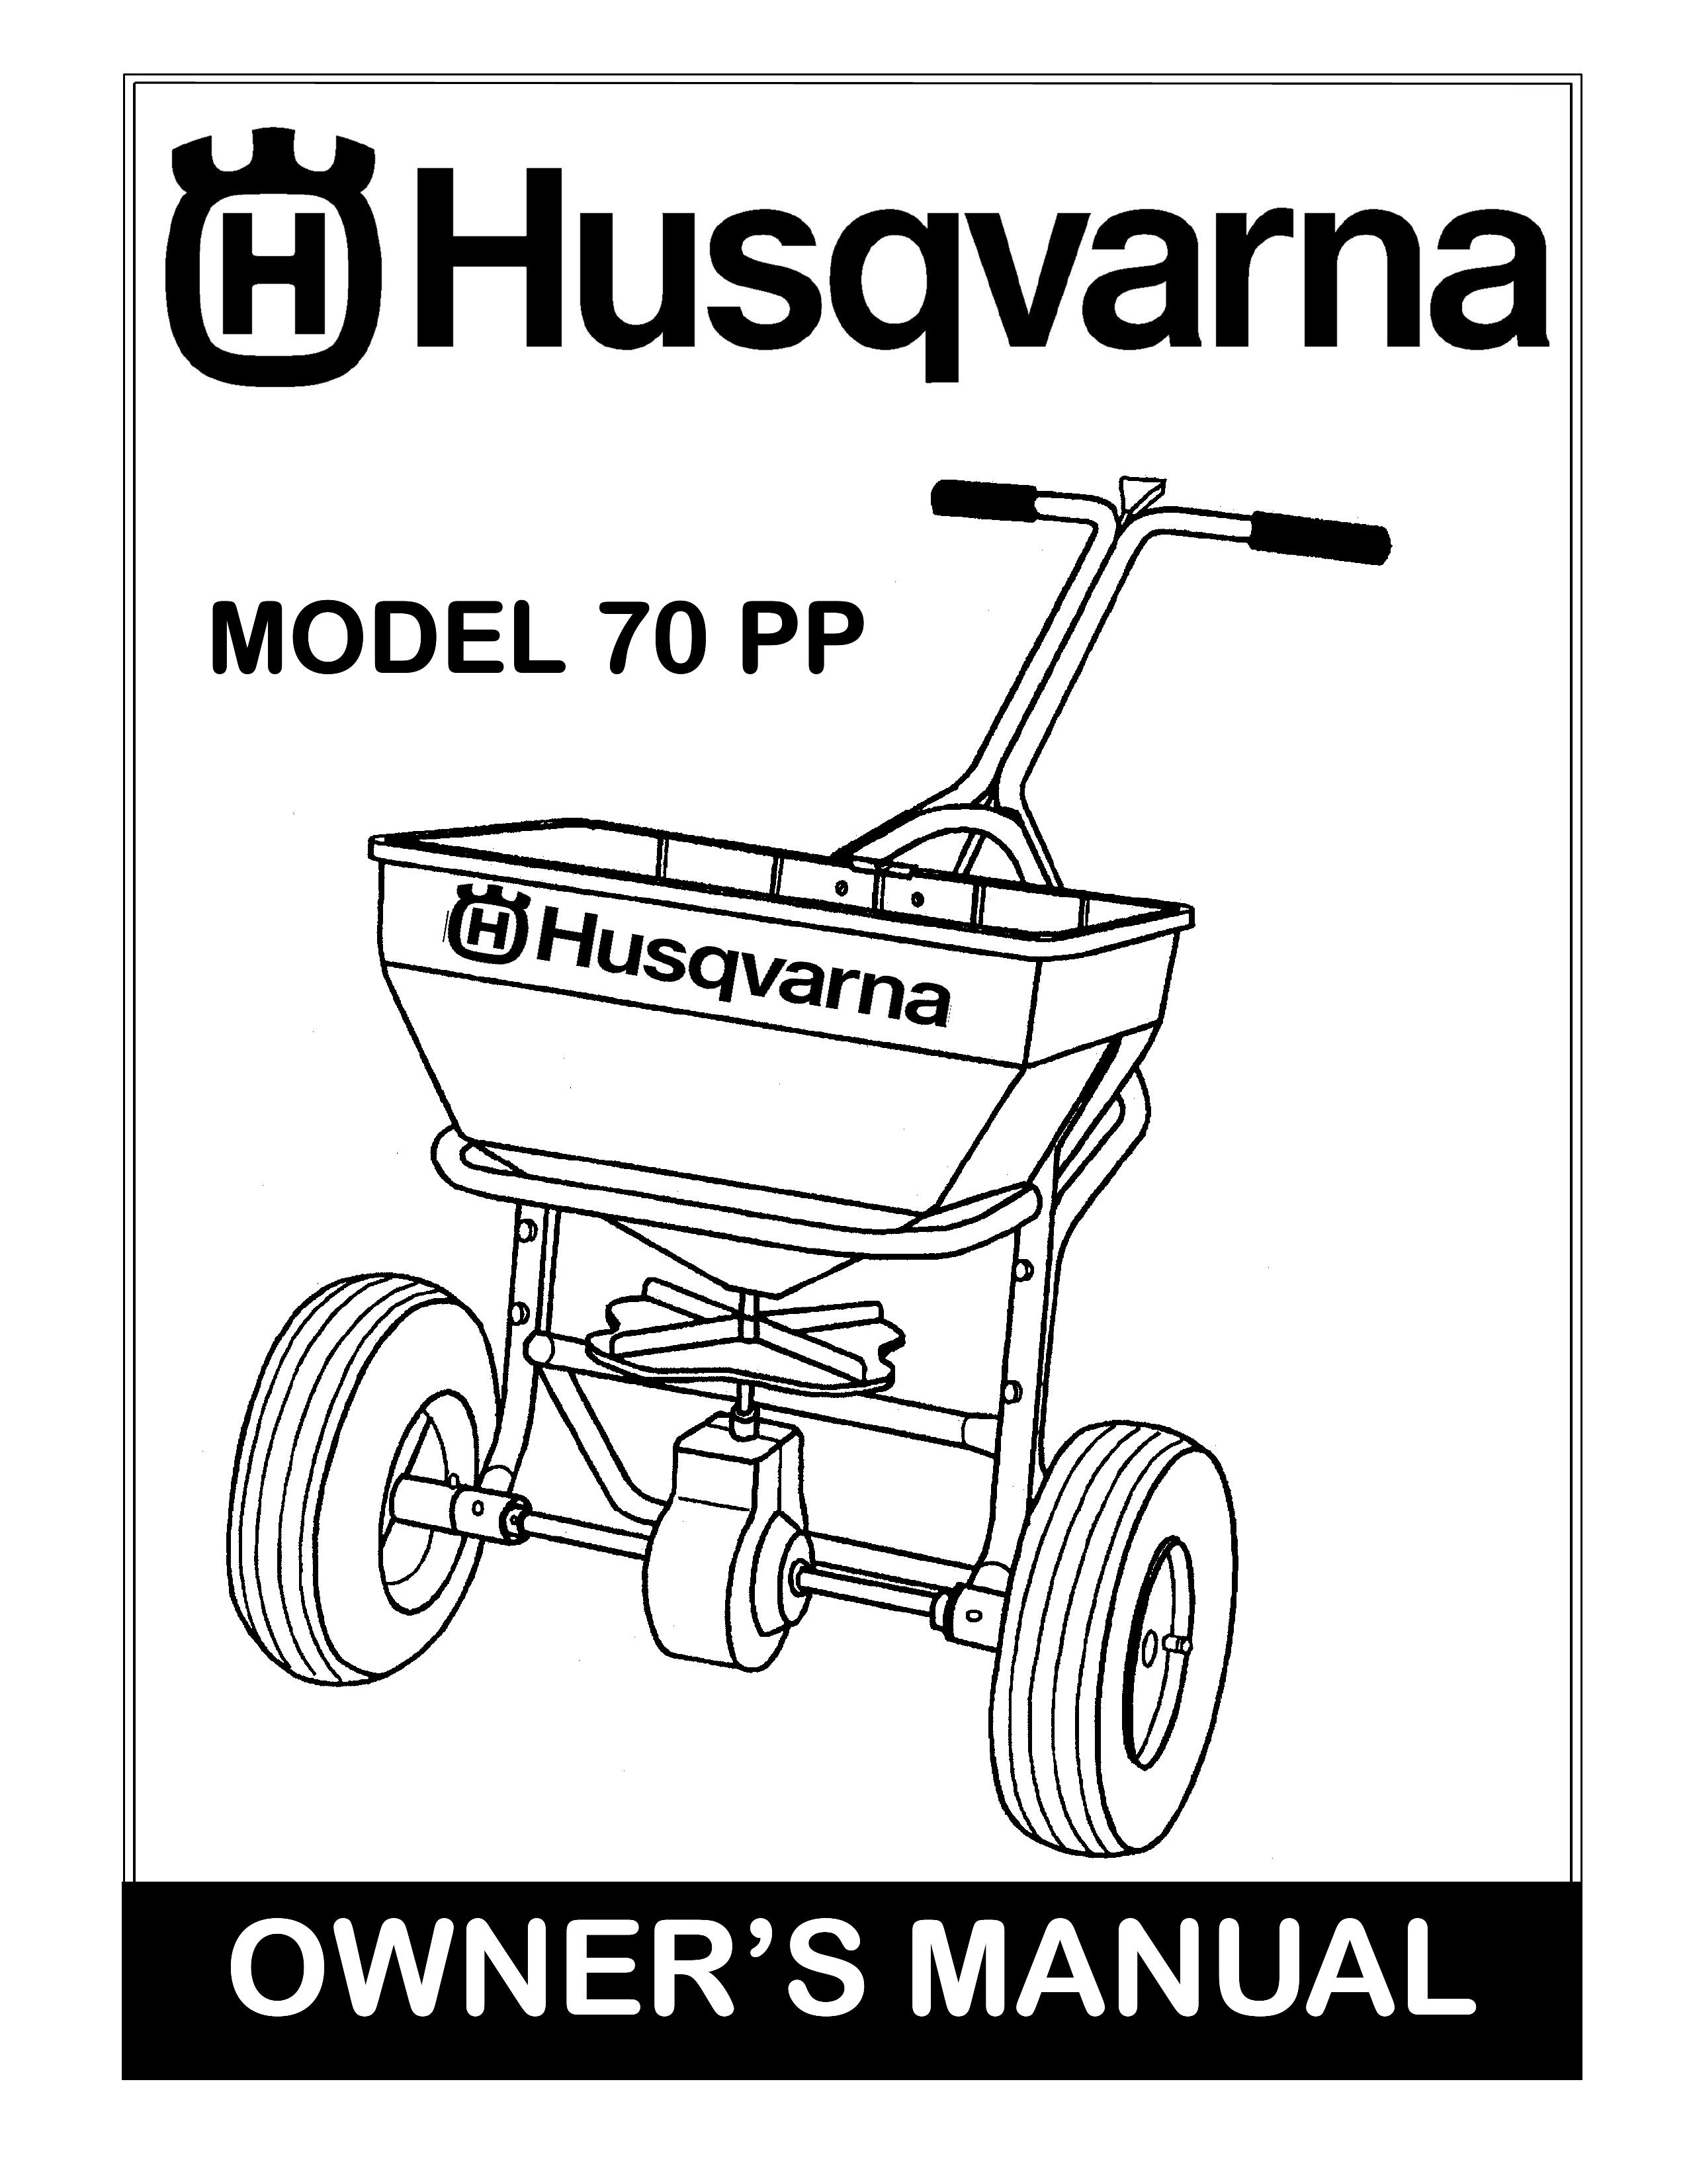 Husqvarna 70 PP Spreader User Manual